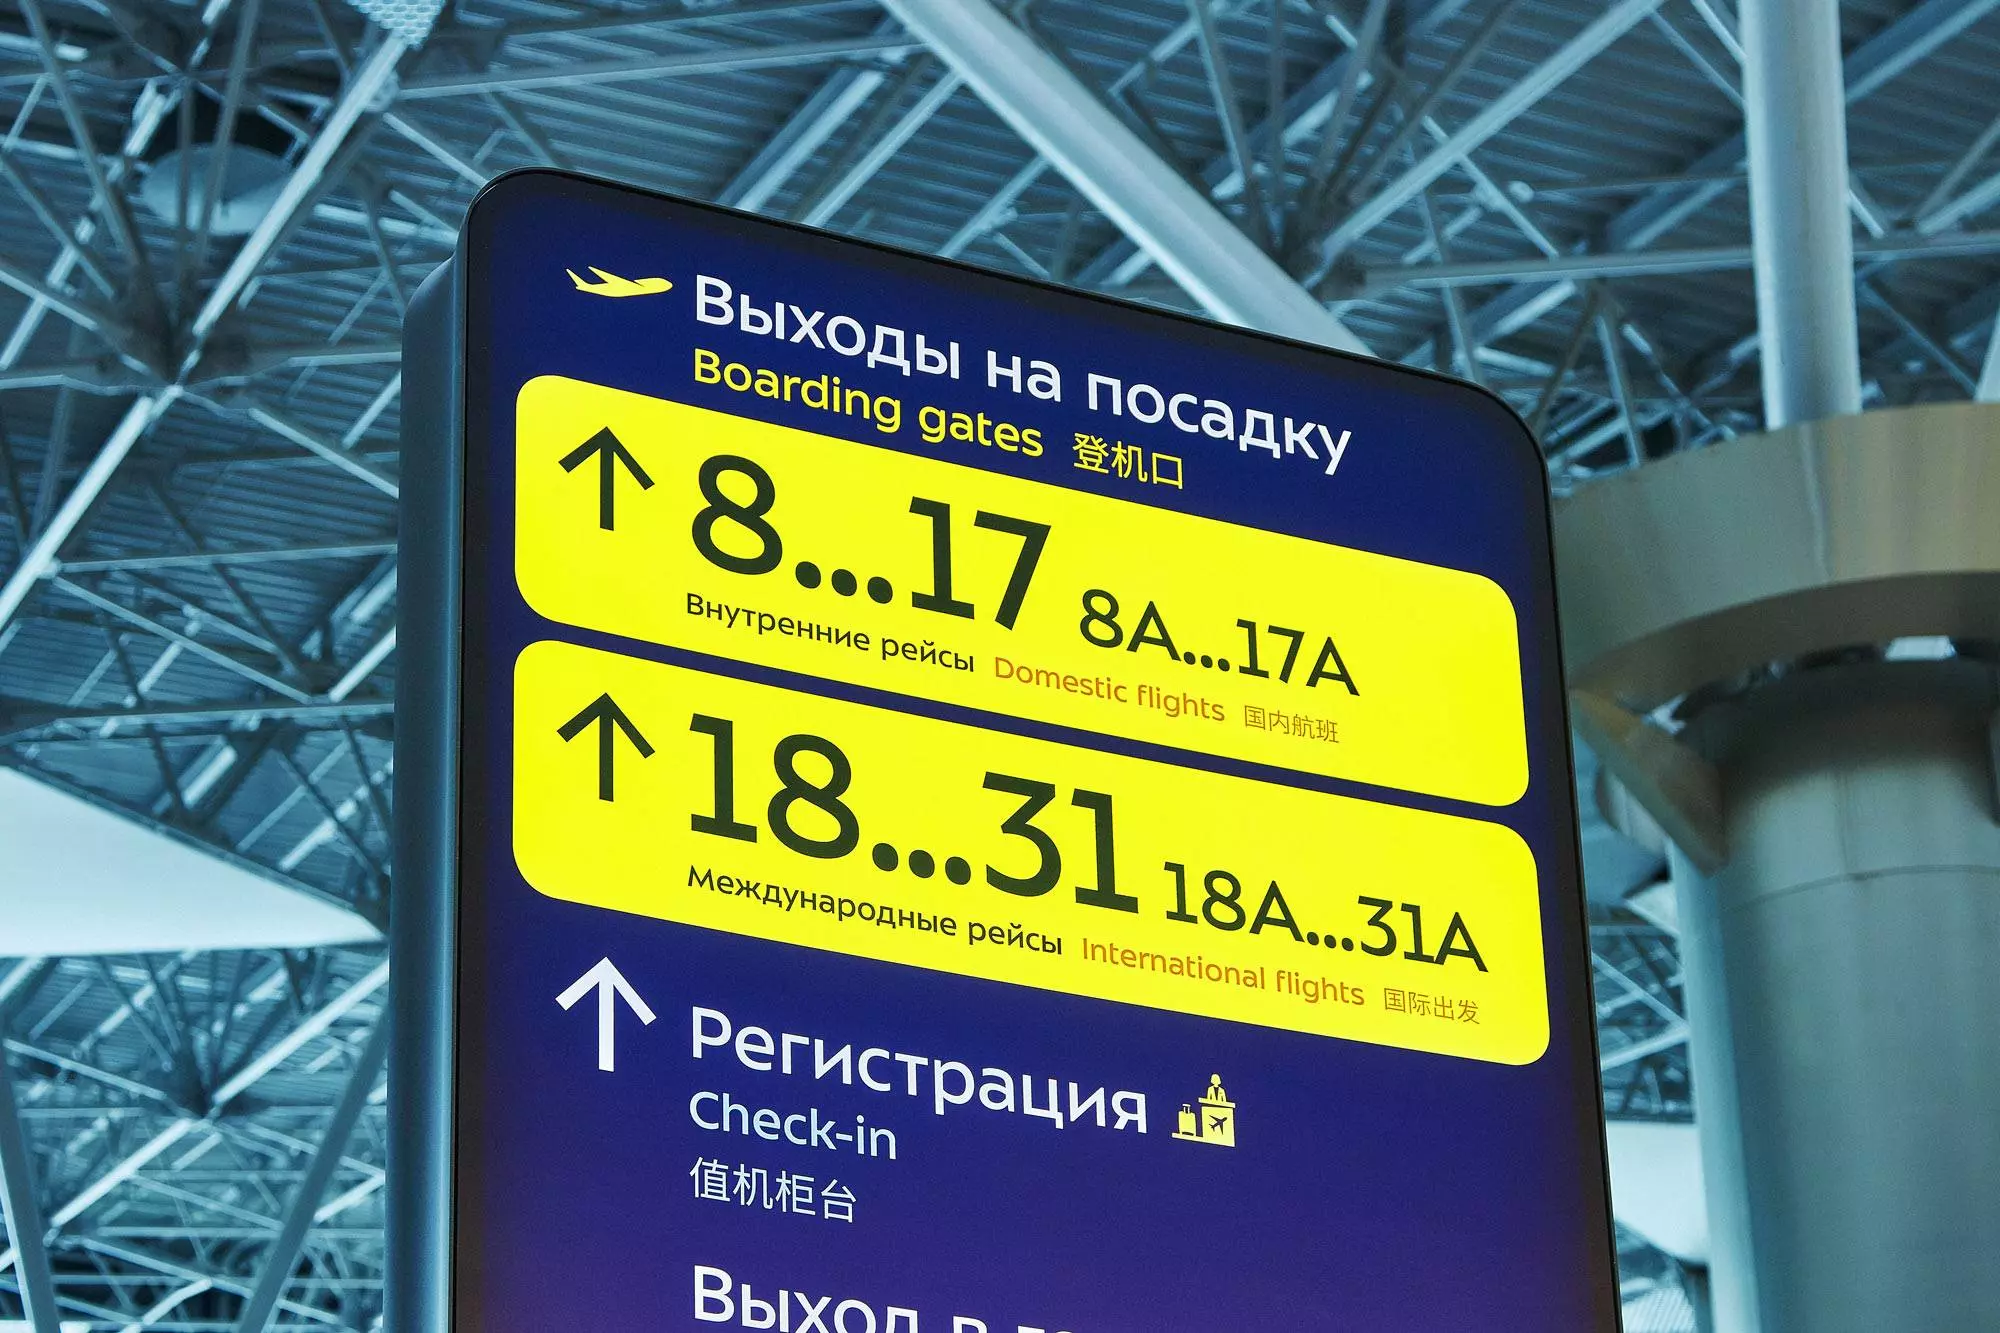 Обзор московских аэропортов